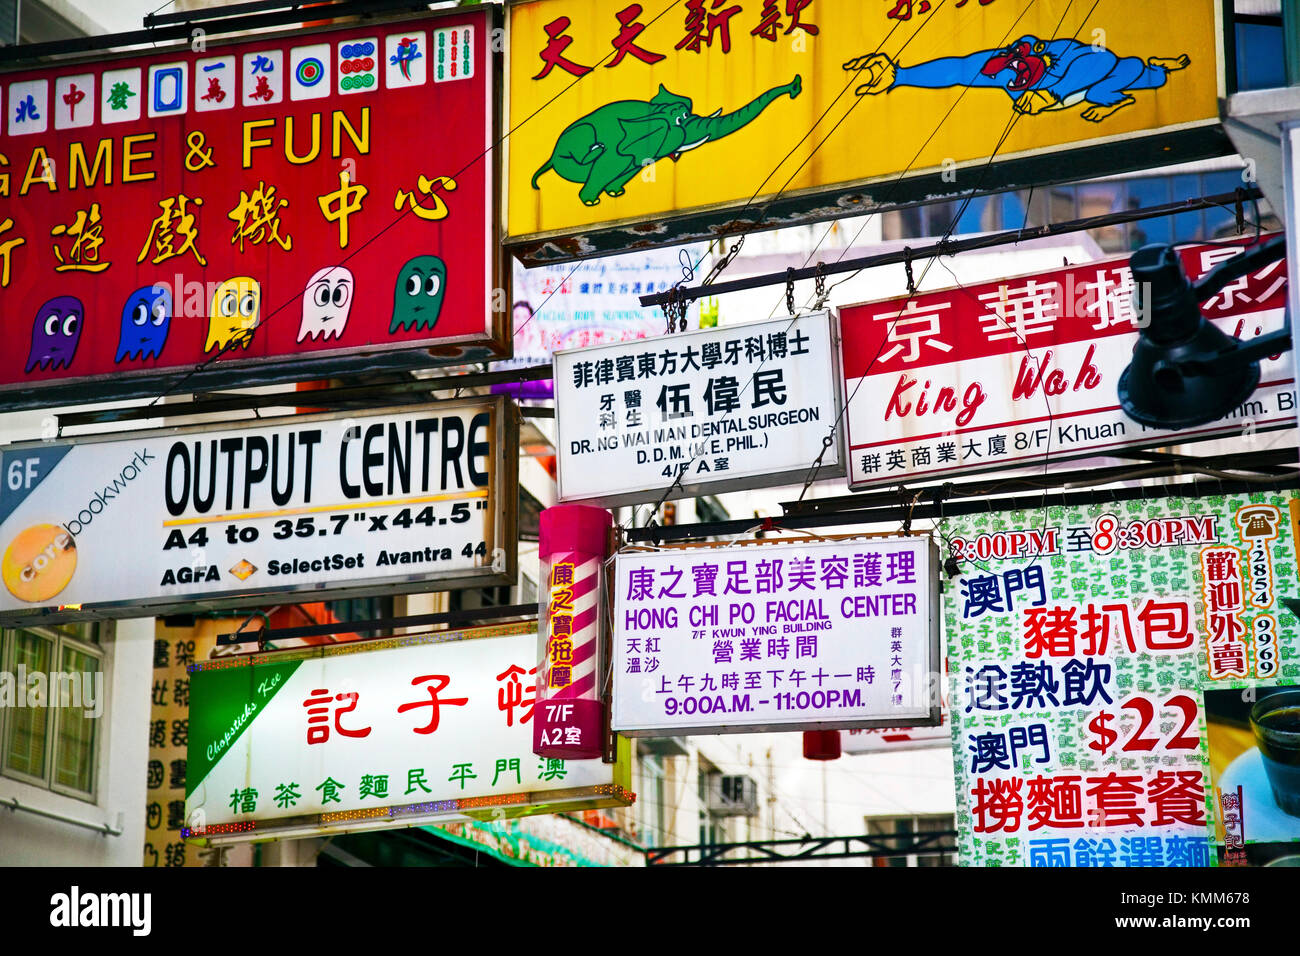 Advertising boards, Hong Kong island, SAR, China Stock Photo